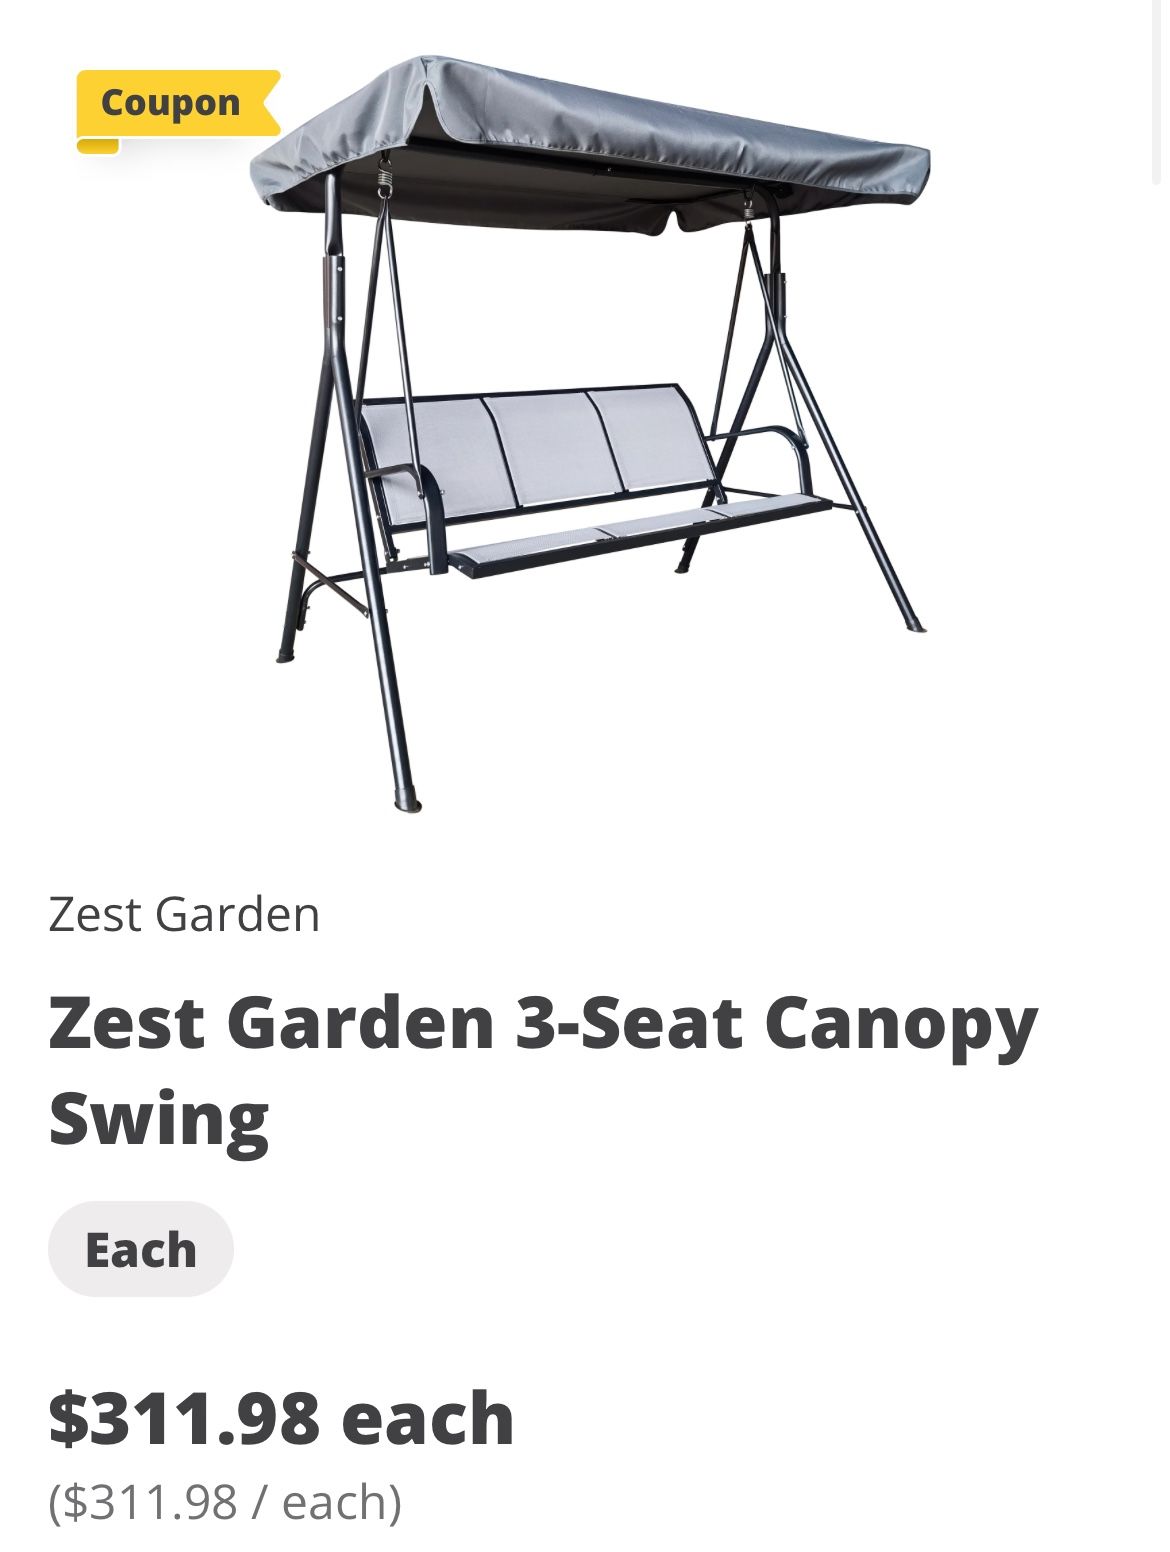 Zest Garden 3-Seat Canopy Swing